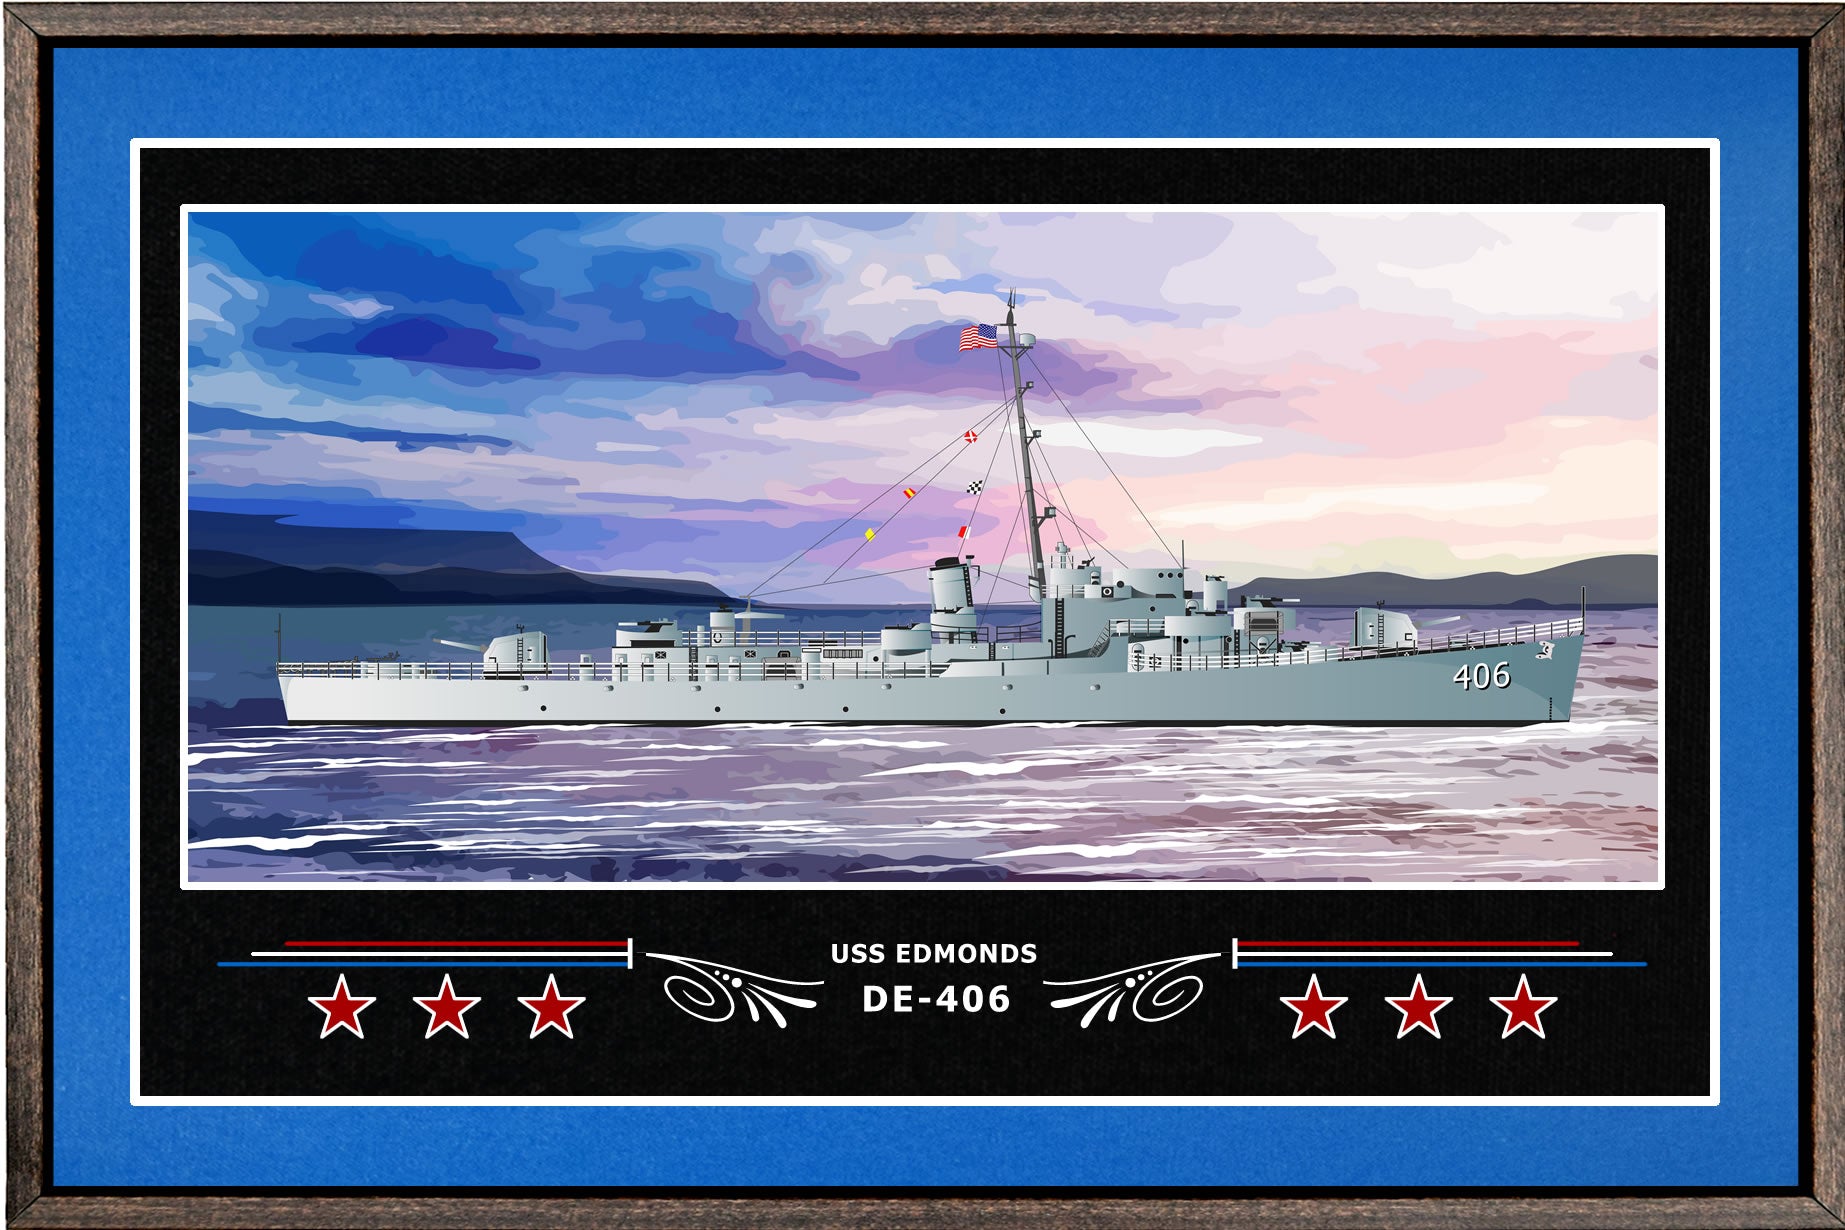 USS EDMONDS DE 406 BOX FRAMED CANVAS ART BLUE